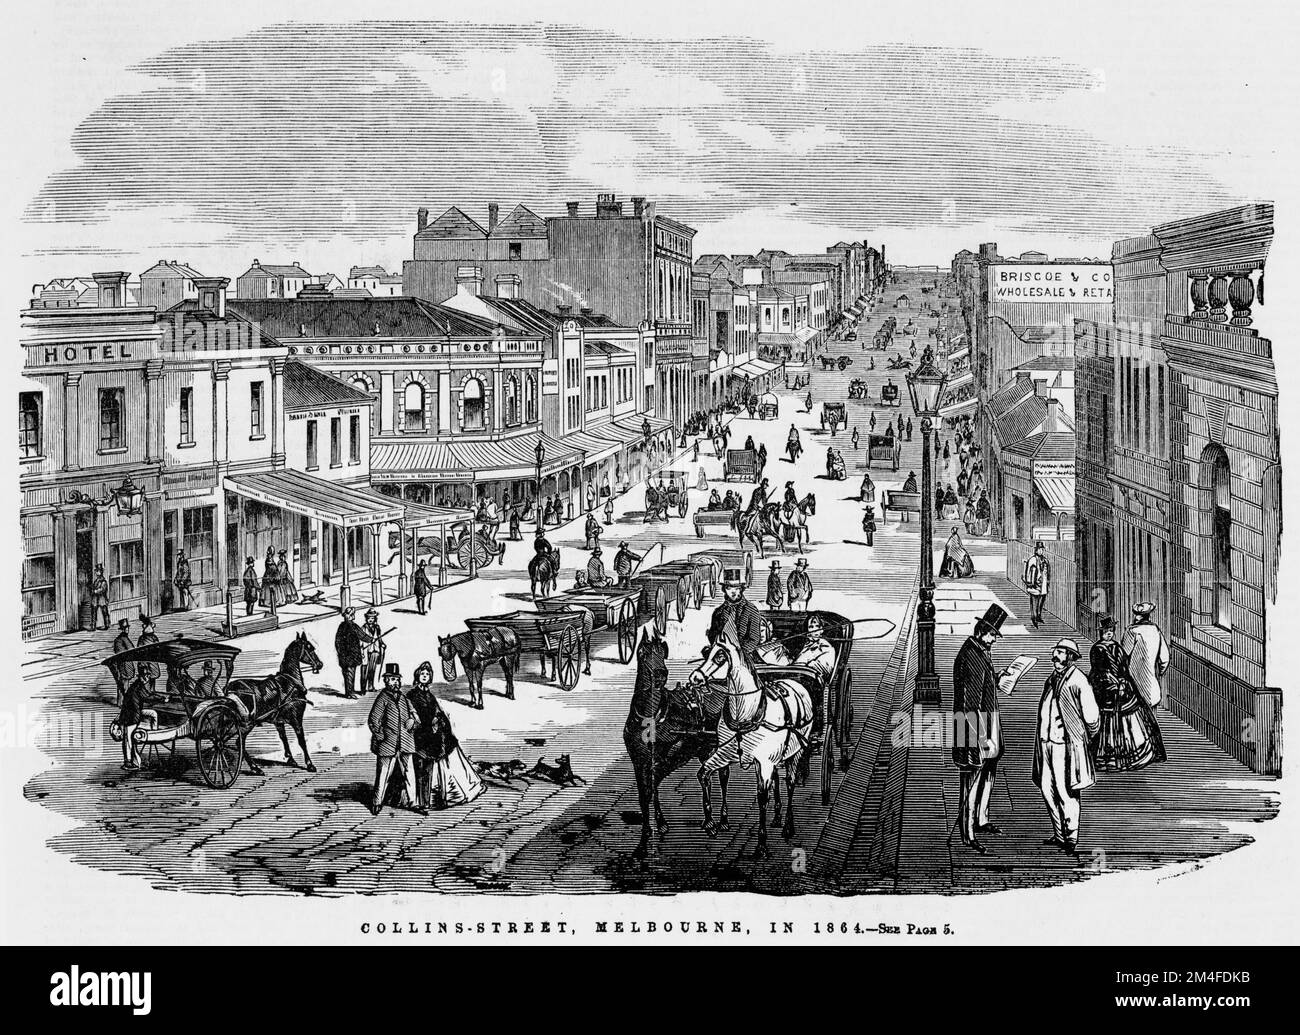 Collins Street, Melbourne nel 1864. Mostra la vista della strada che guarda ad ovest, con il paesaggio stradale che include veicoli trainati da cavalli, pedoni e l'edificio Briscoe and Company. Foto Stock